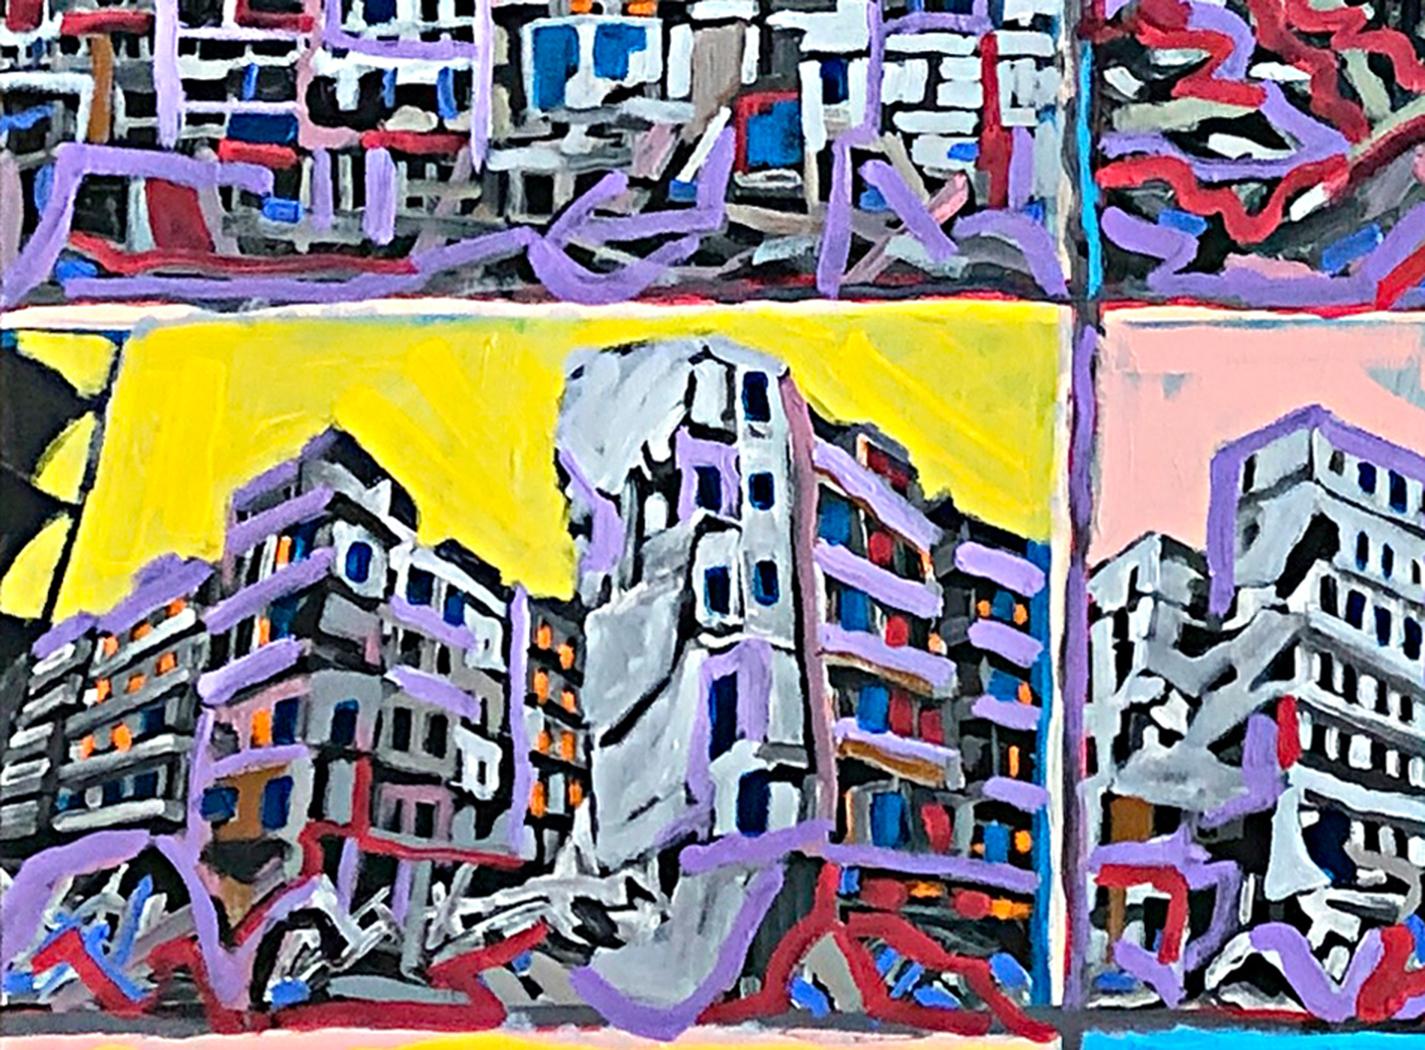 Aleppo to Kyiv Windows to the World - Painting by Tony Khawam